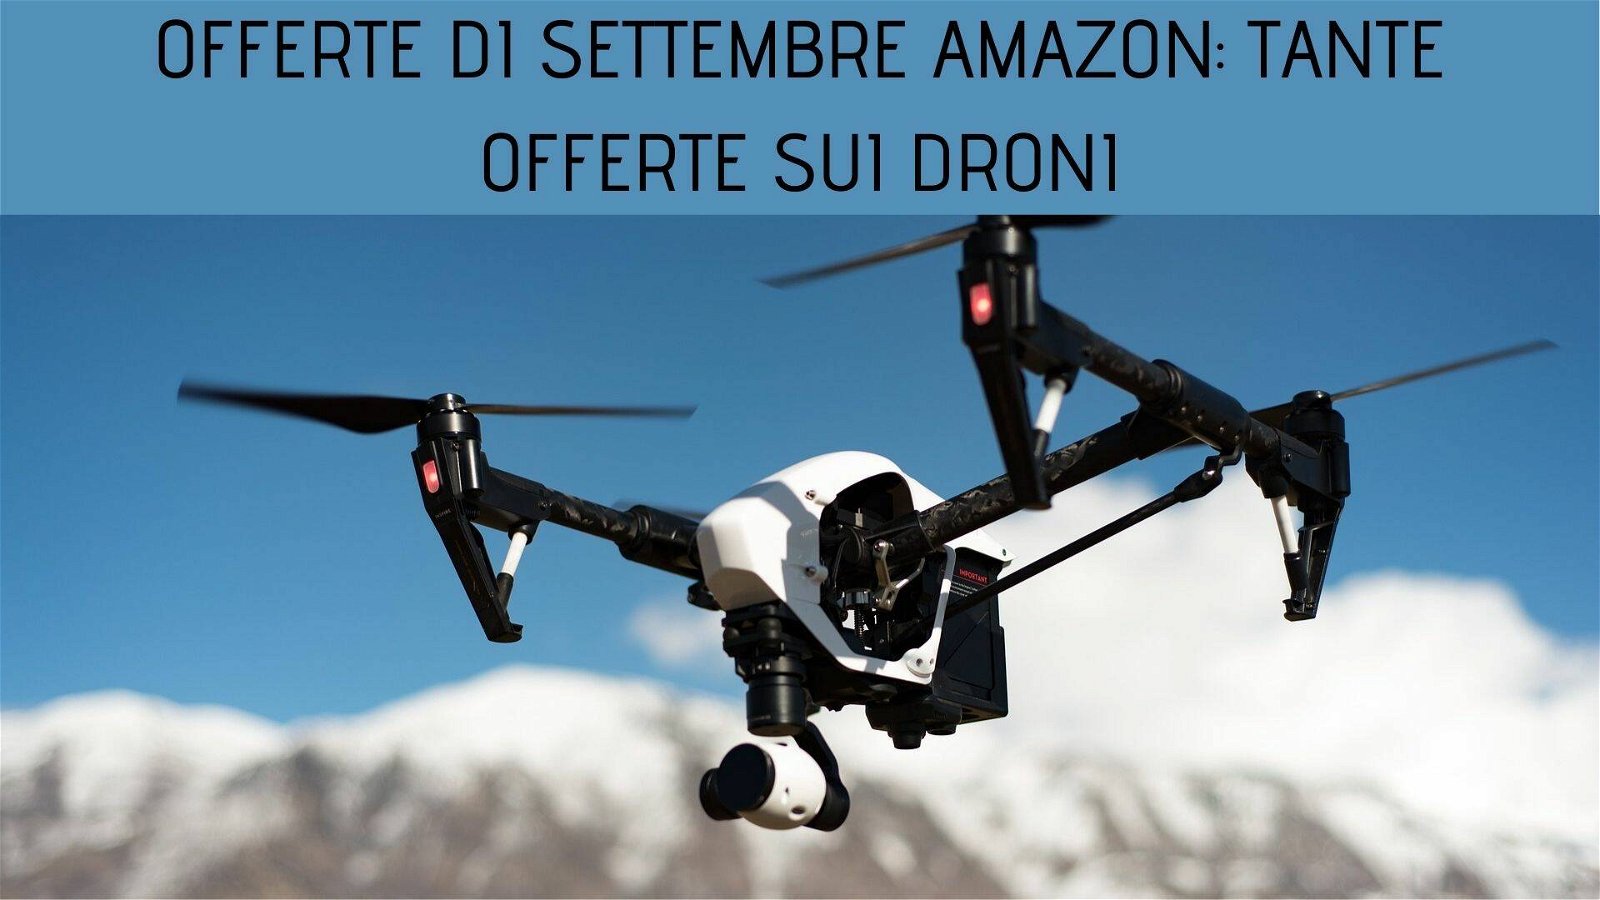 Immagine di Offerte di settembre Amazon: arrivano le promozioni sui droni!